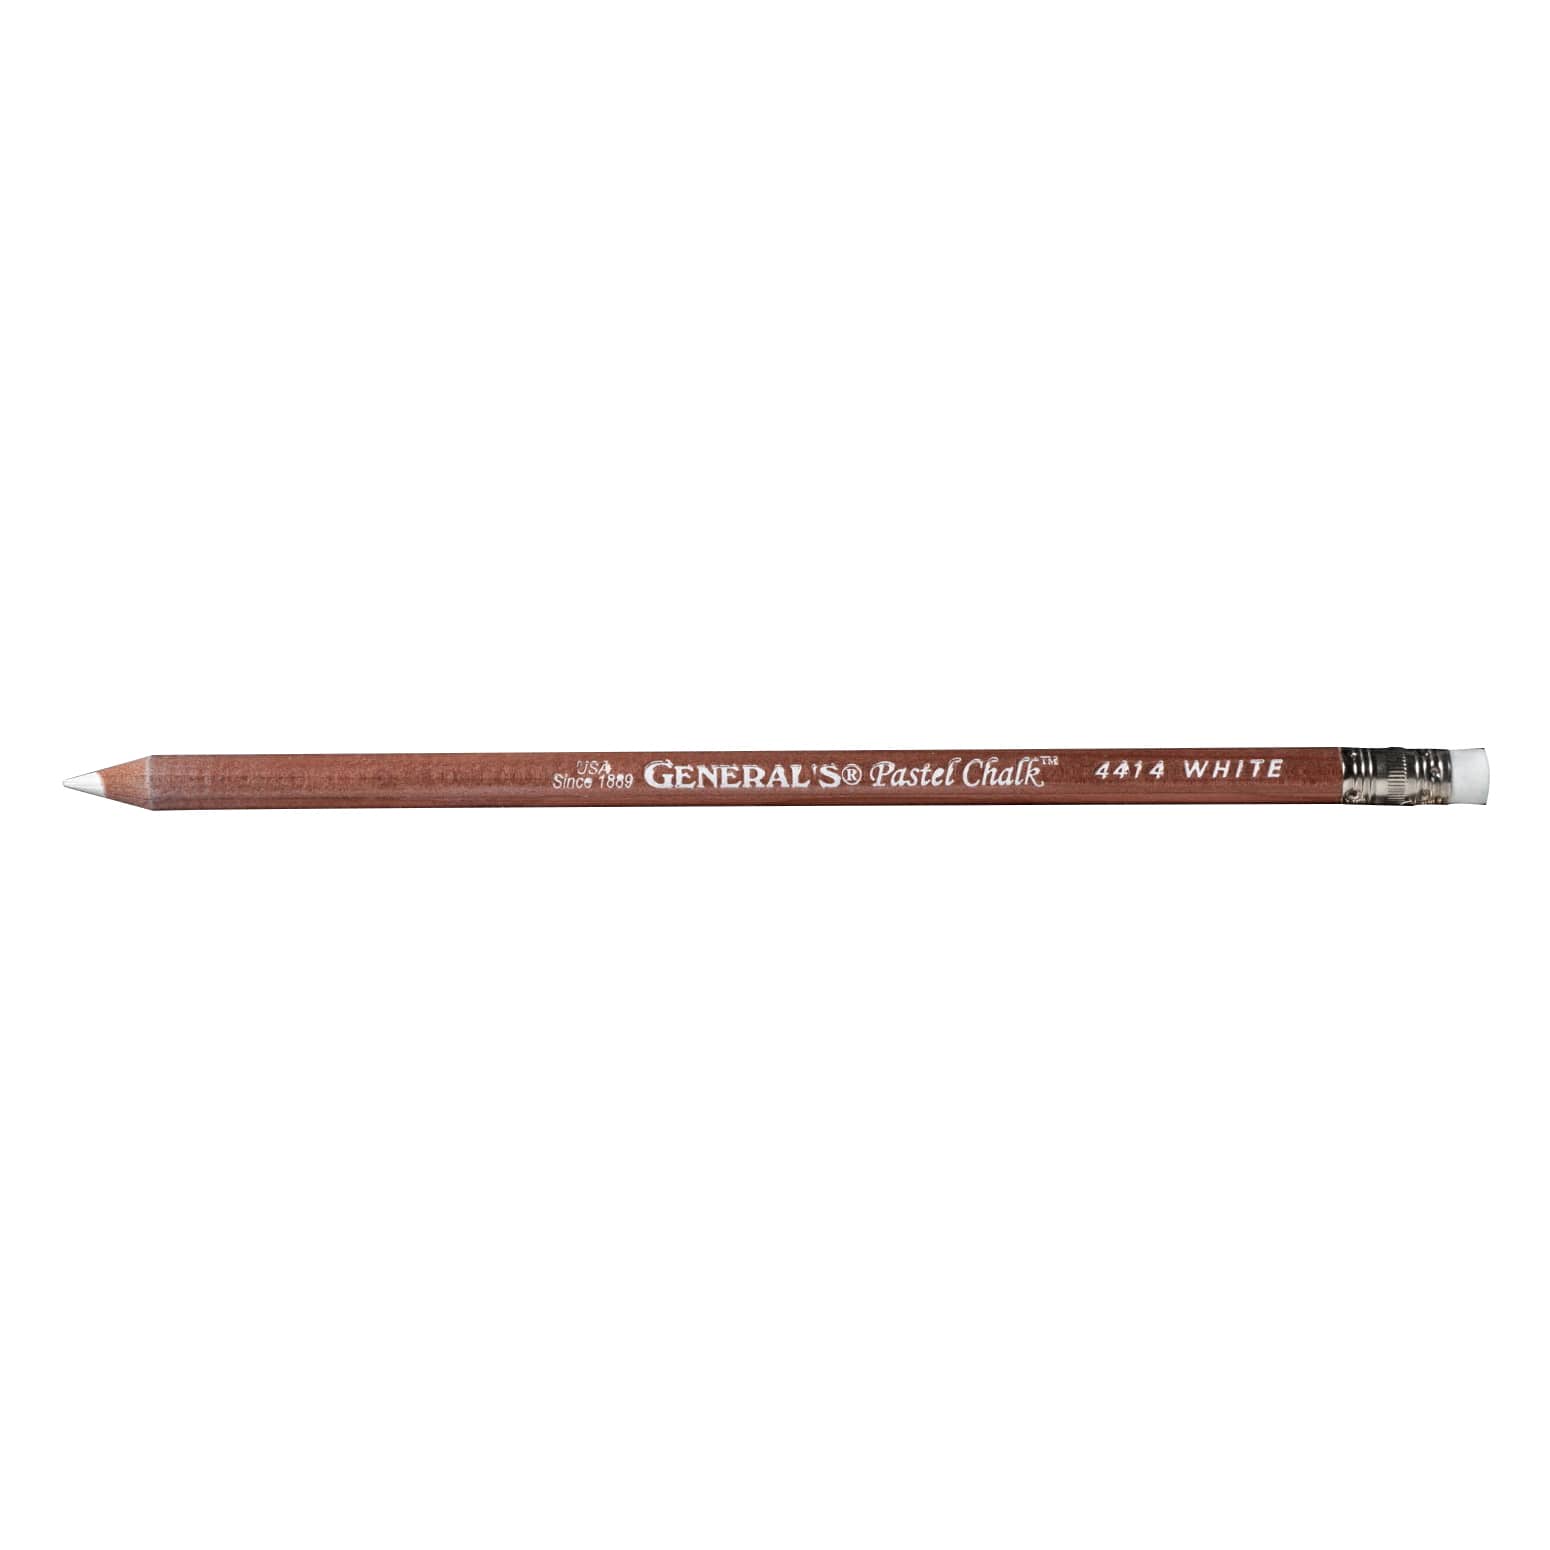 White Pastel Chalk Pencils, General's Pencil #4414-2BP